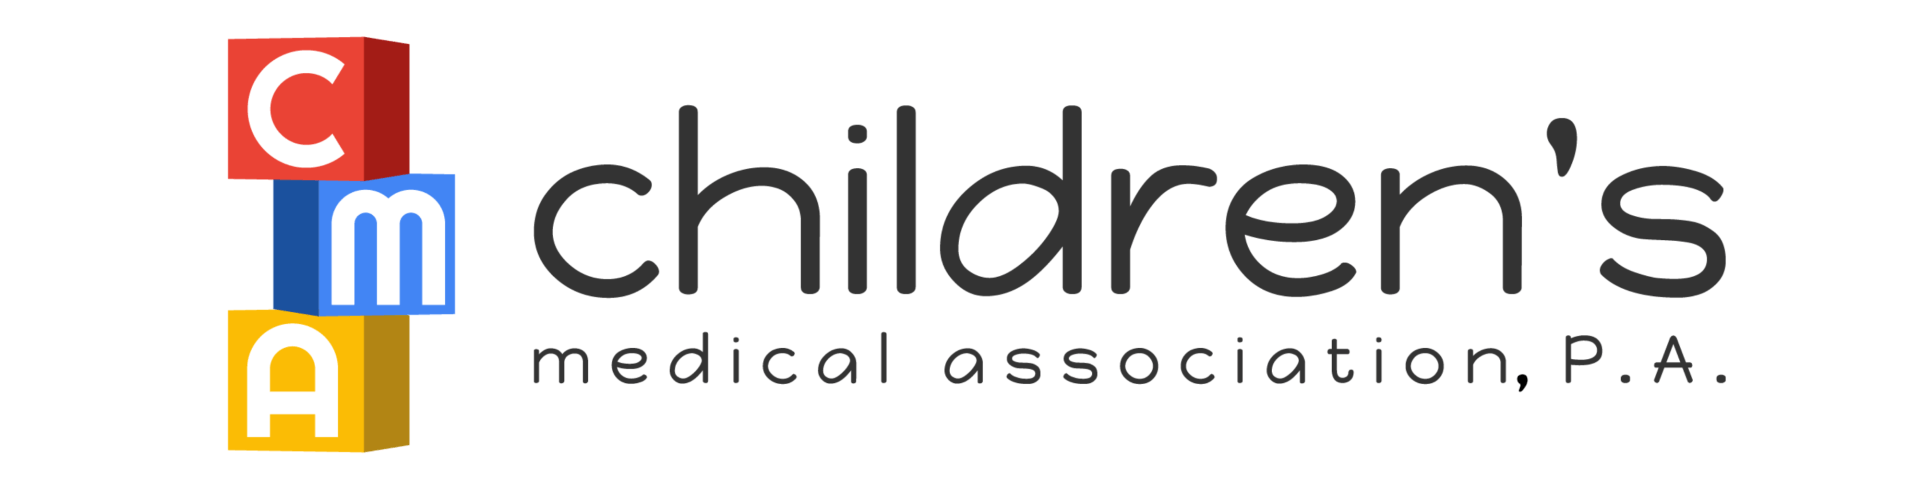 Children's Medical Association, P.A